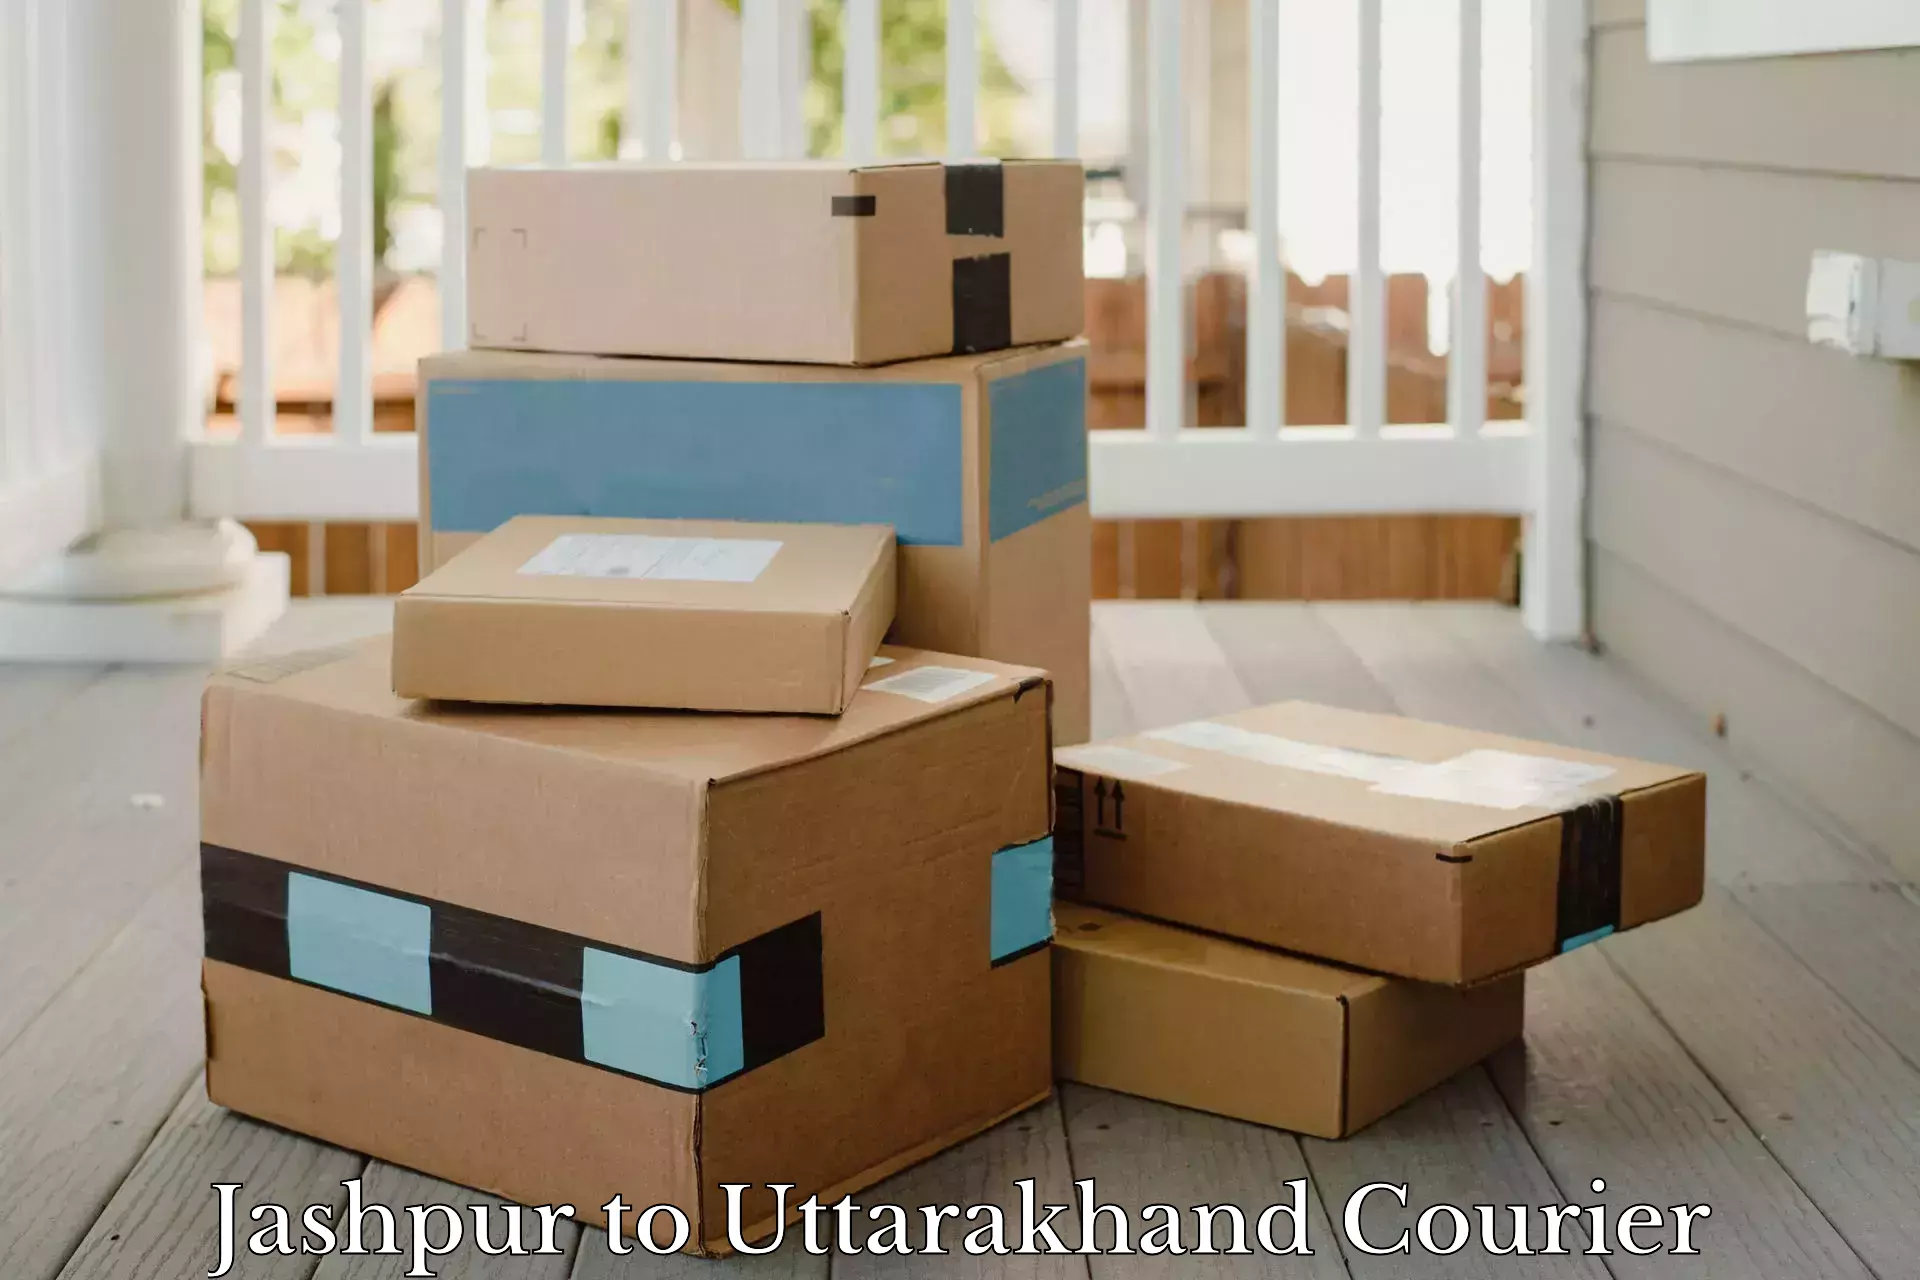 High-capacity parcel service Jashpur to Khatima